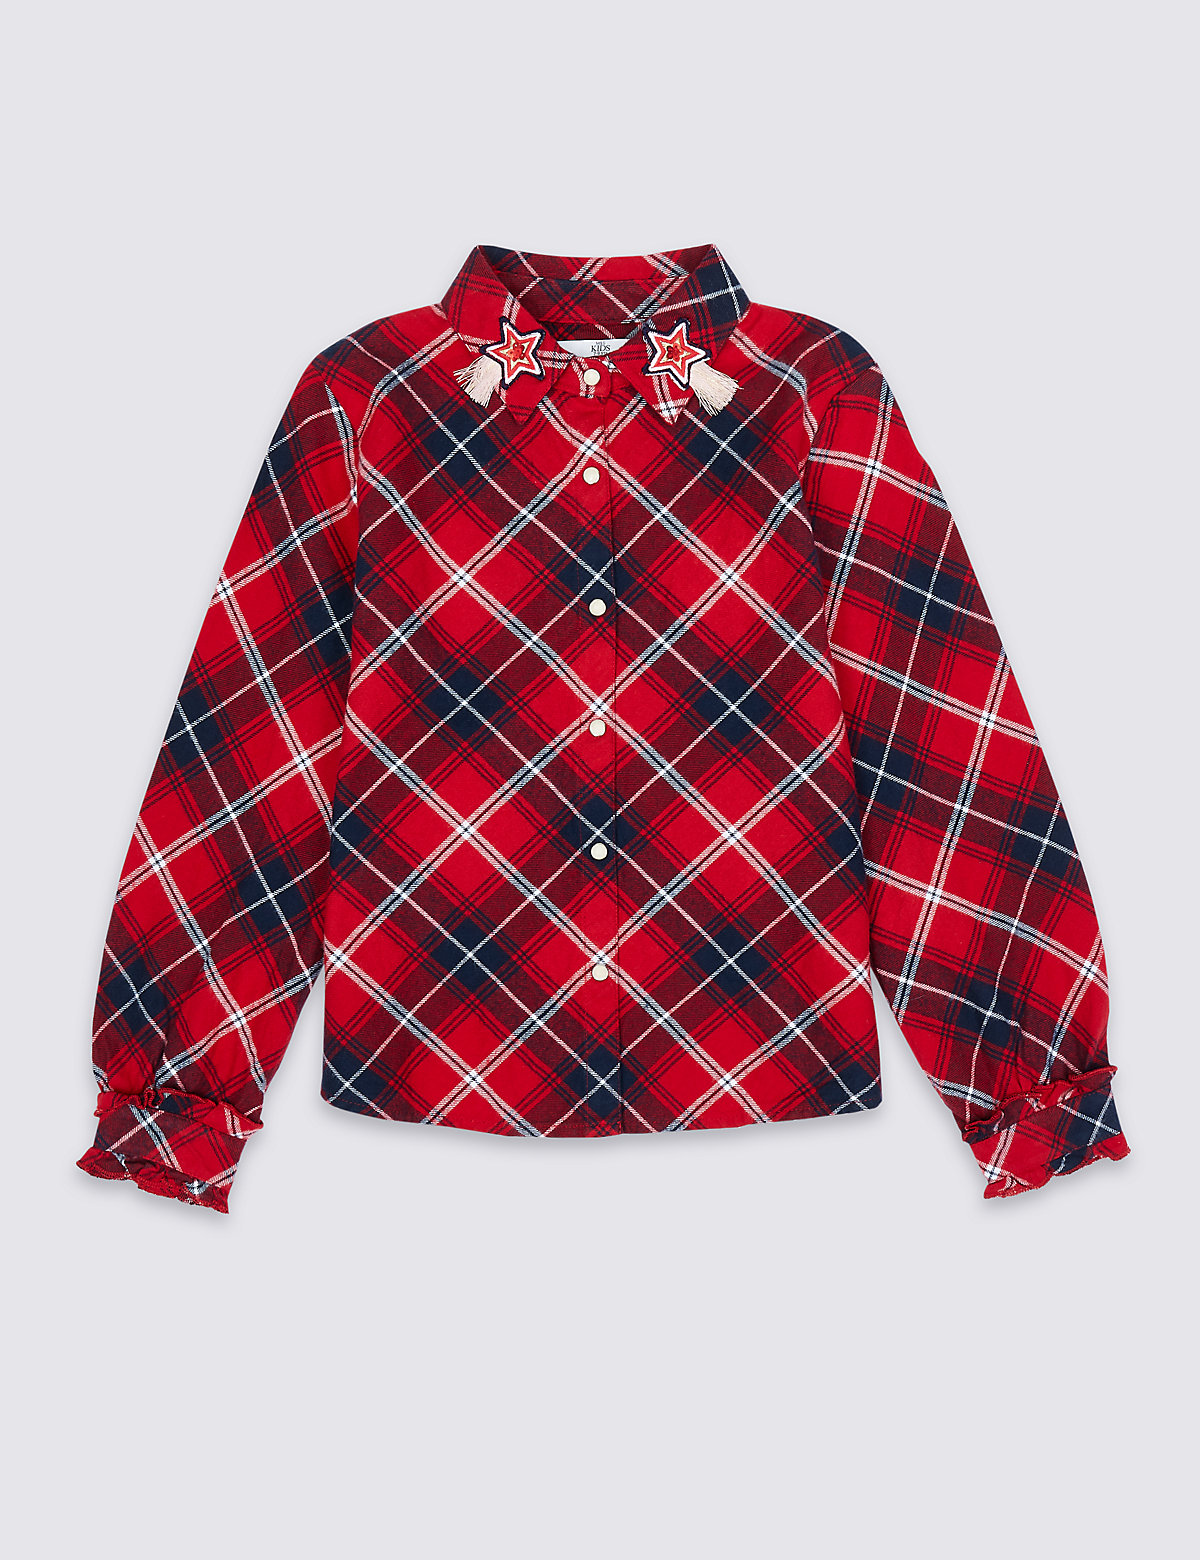 Блуза из 100% хлопка, в клетку (3-16 лет) Marks & Spencer. Цвет: красный микс